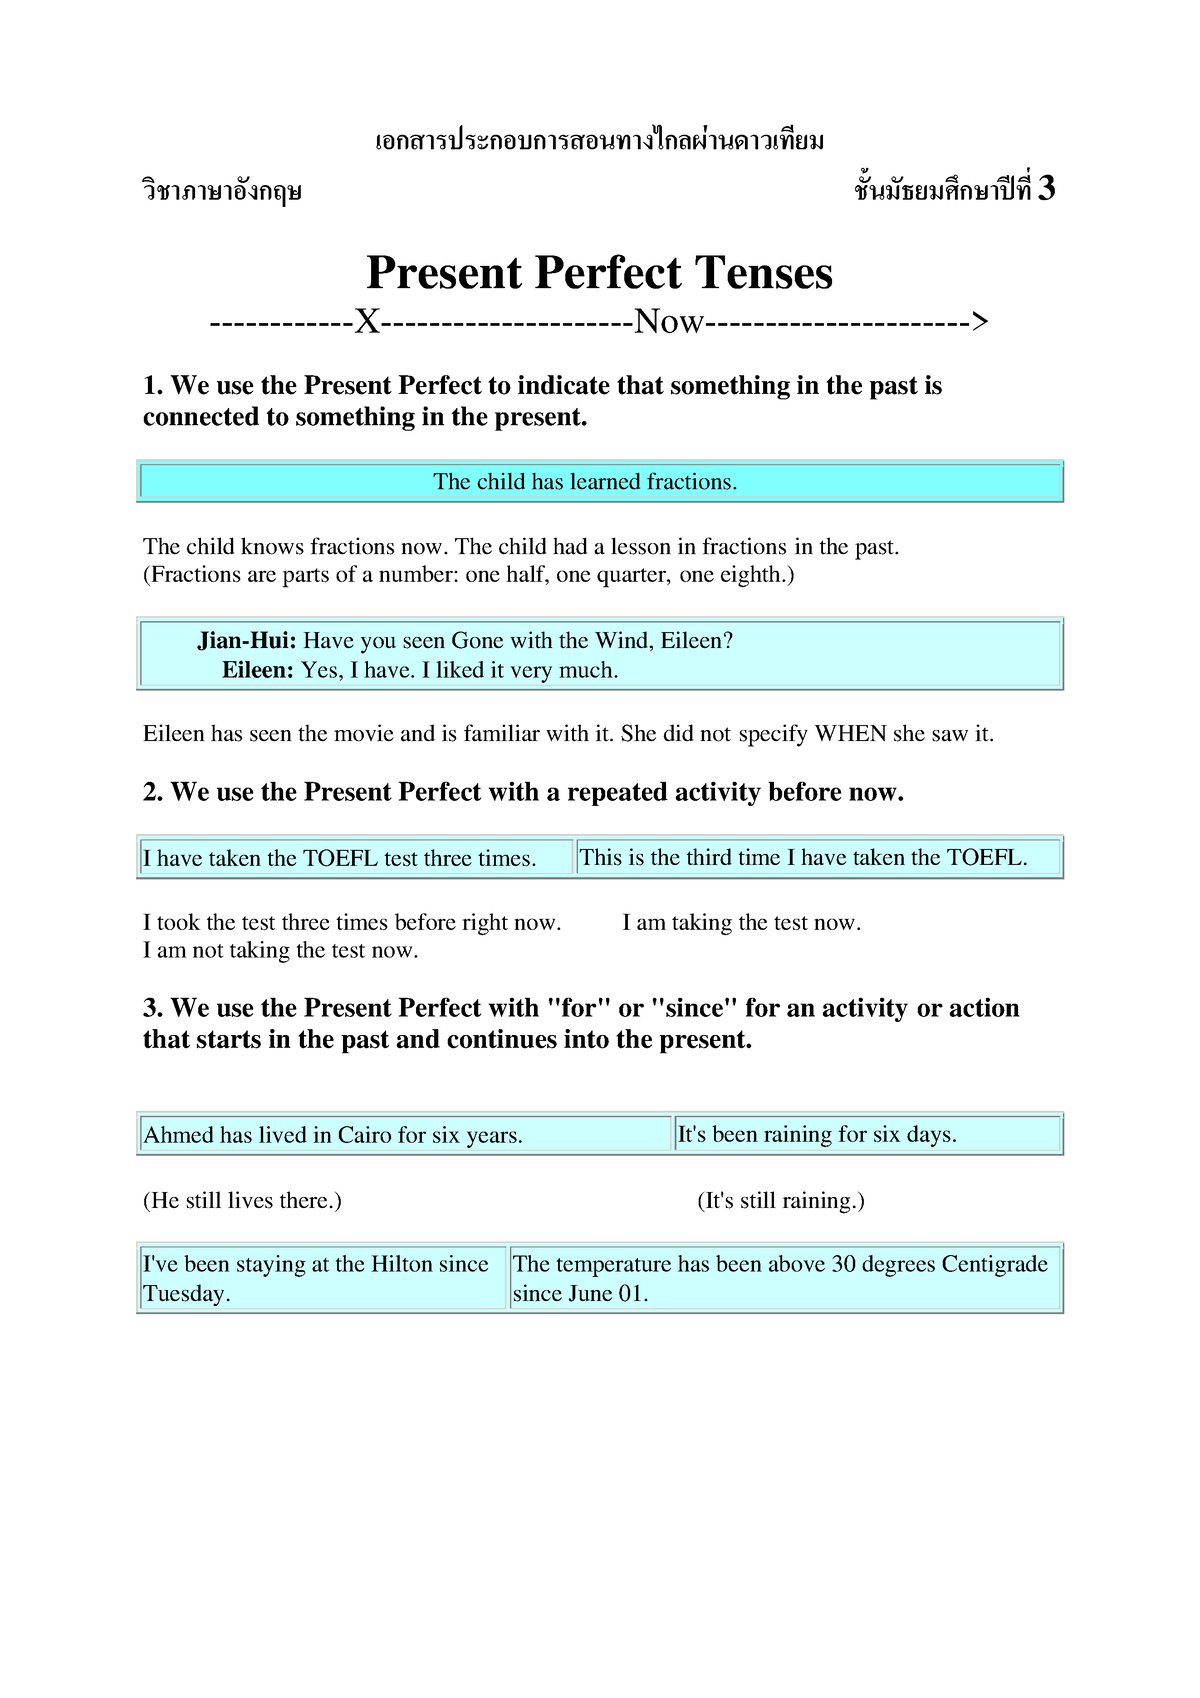 Present Perfect - เอกสารประกอบการสอนทางไกลผ านดาวเทียม วิชาภาษาอังกฤษ ...